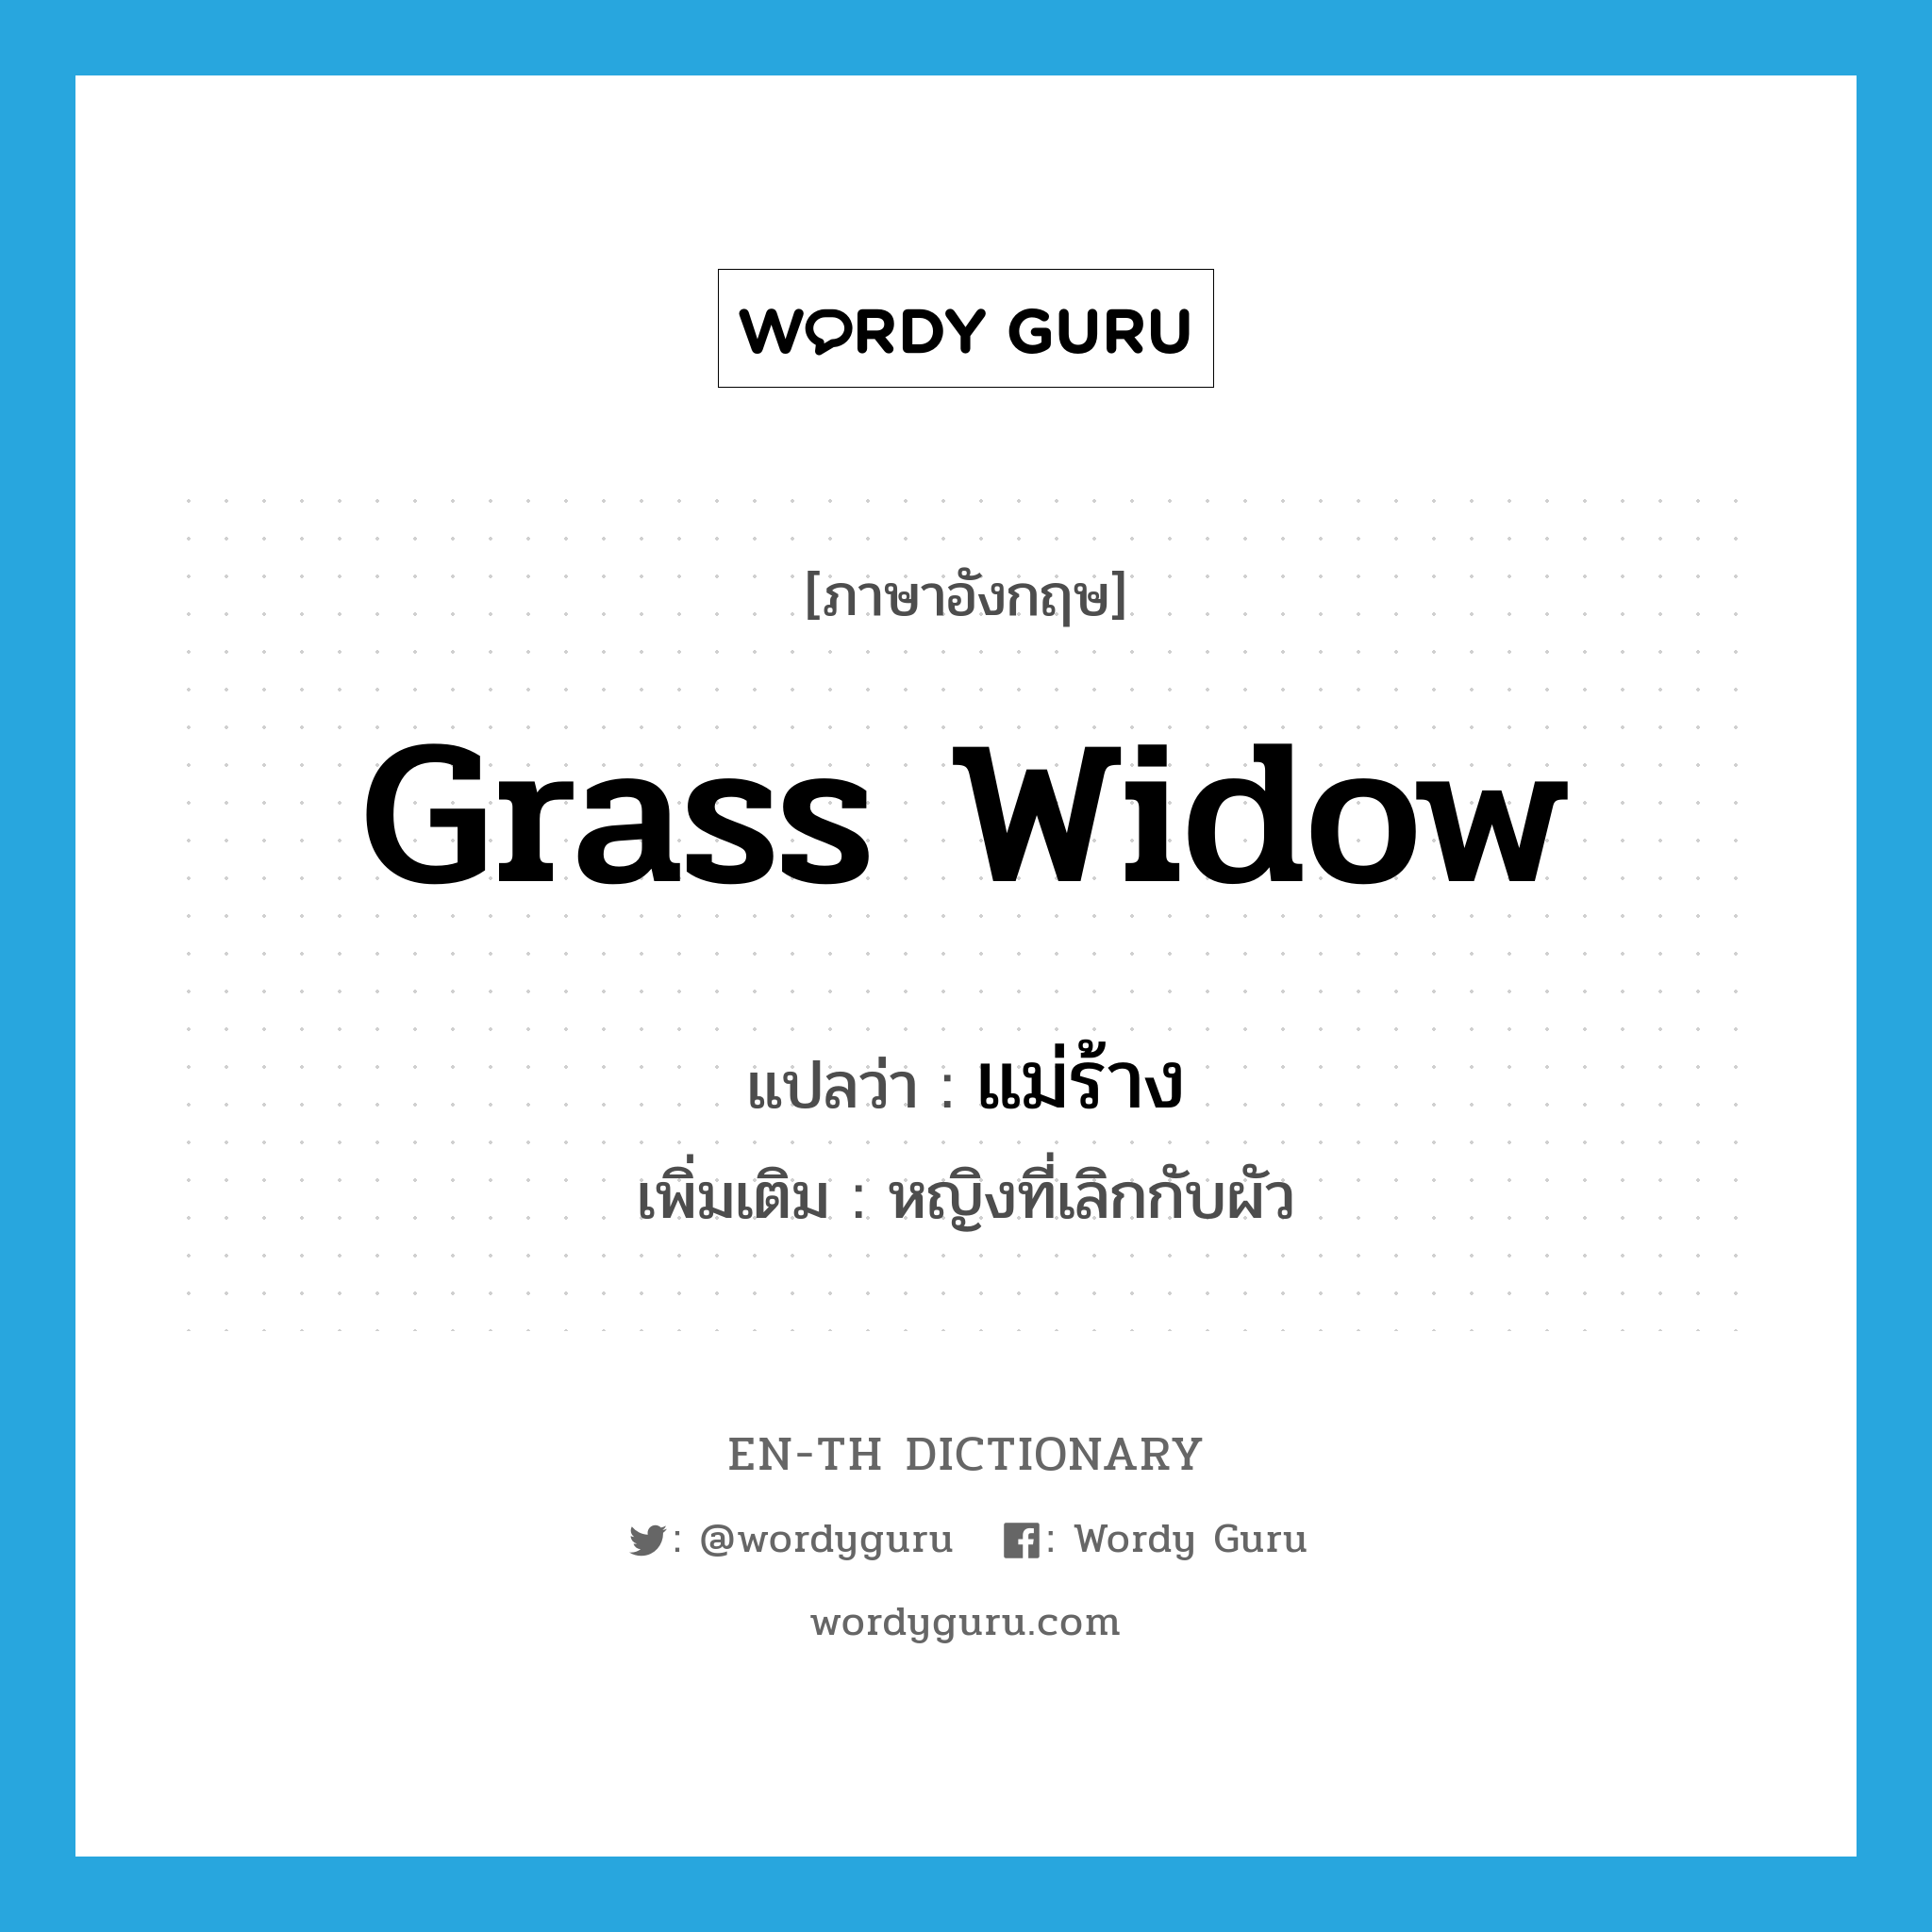 แม่ร้าง ภาษาอังกฤษ?, คำศัพท์ภาษาอังกฤษ แม่ร้าง แปลว่า grass widow ประเภท N เพิ่มเติม หญิงที่เลิกกับผัว หมวด N